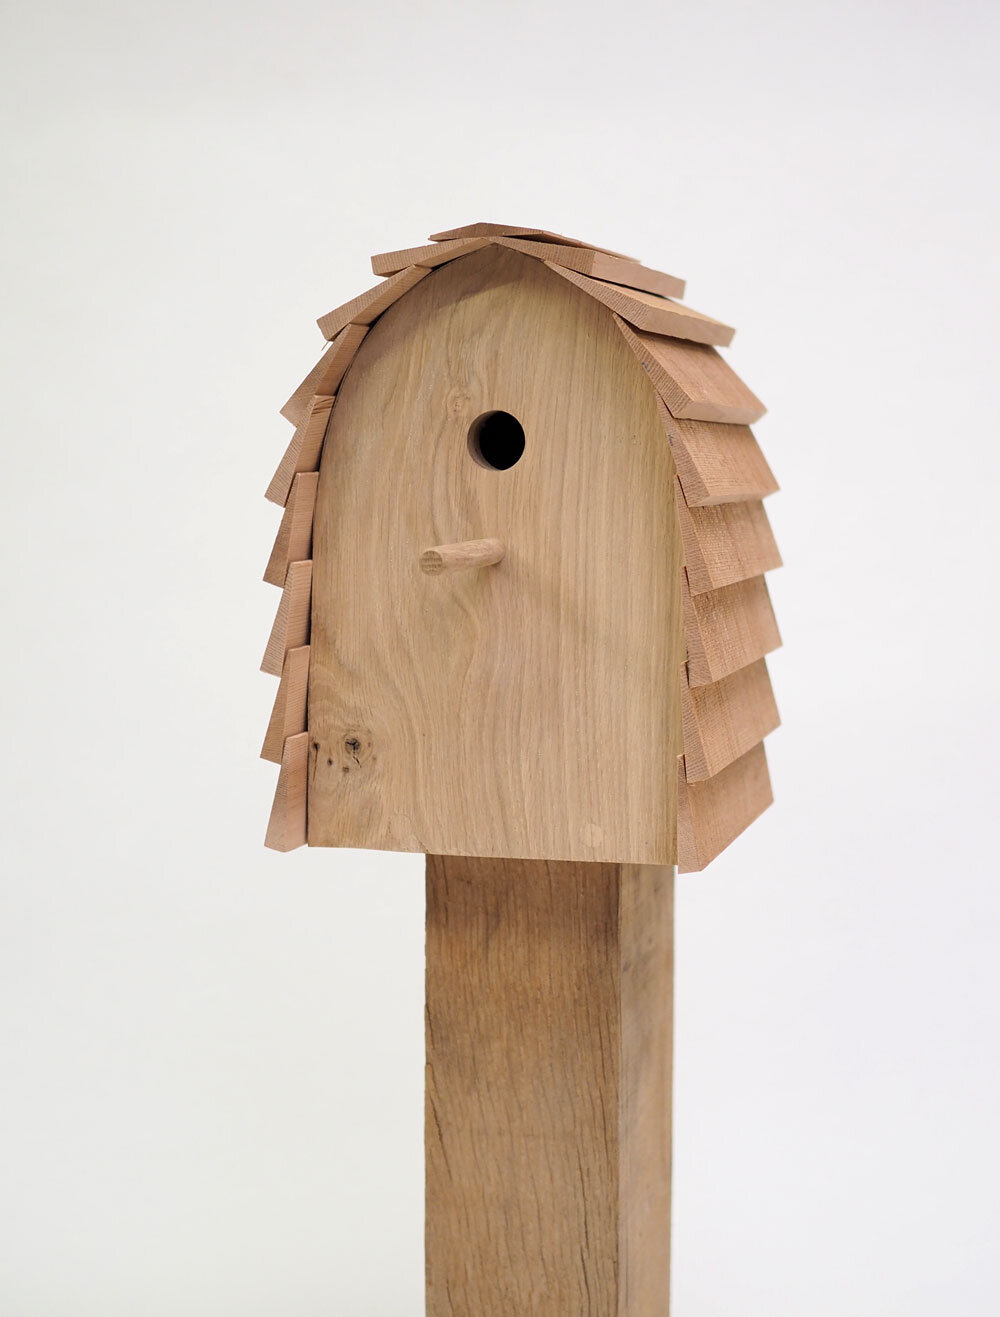 Buri Rope Bird House – Artisan Variety